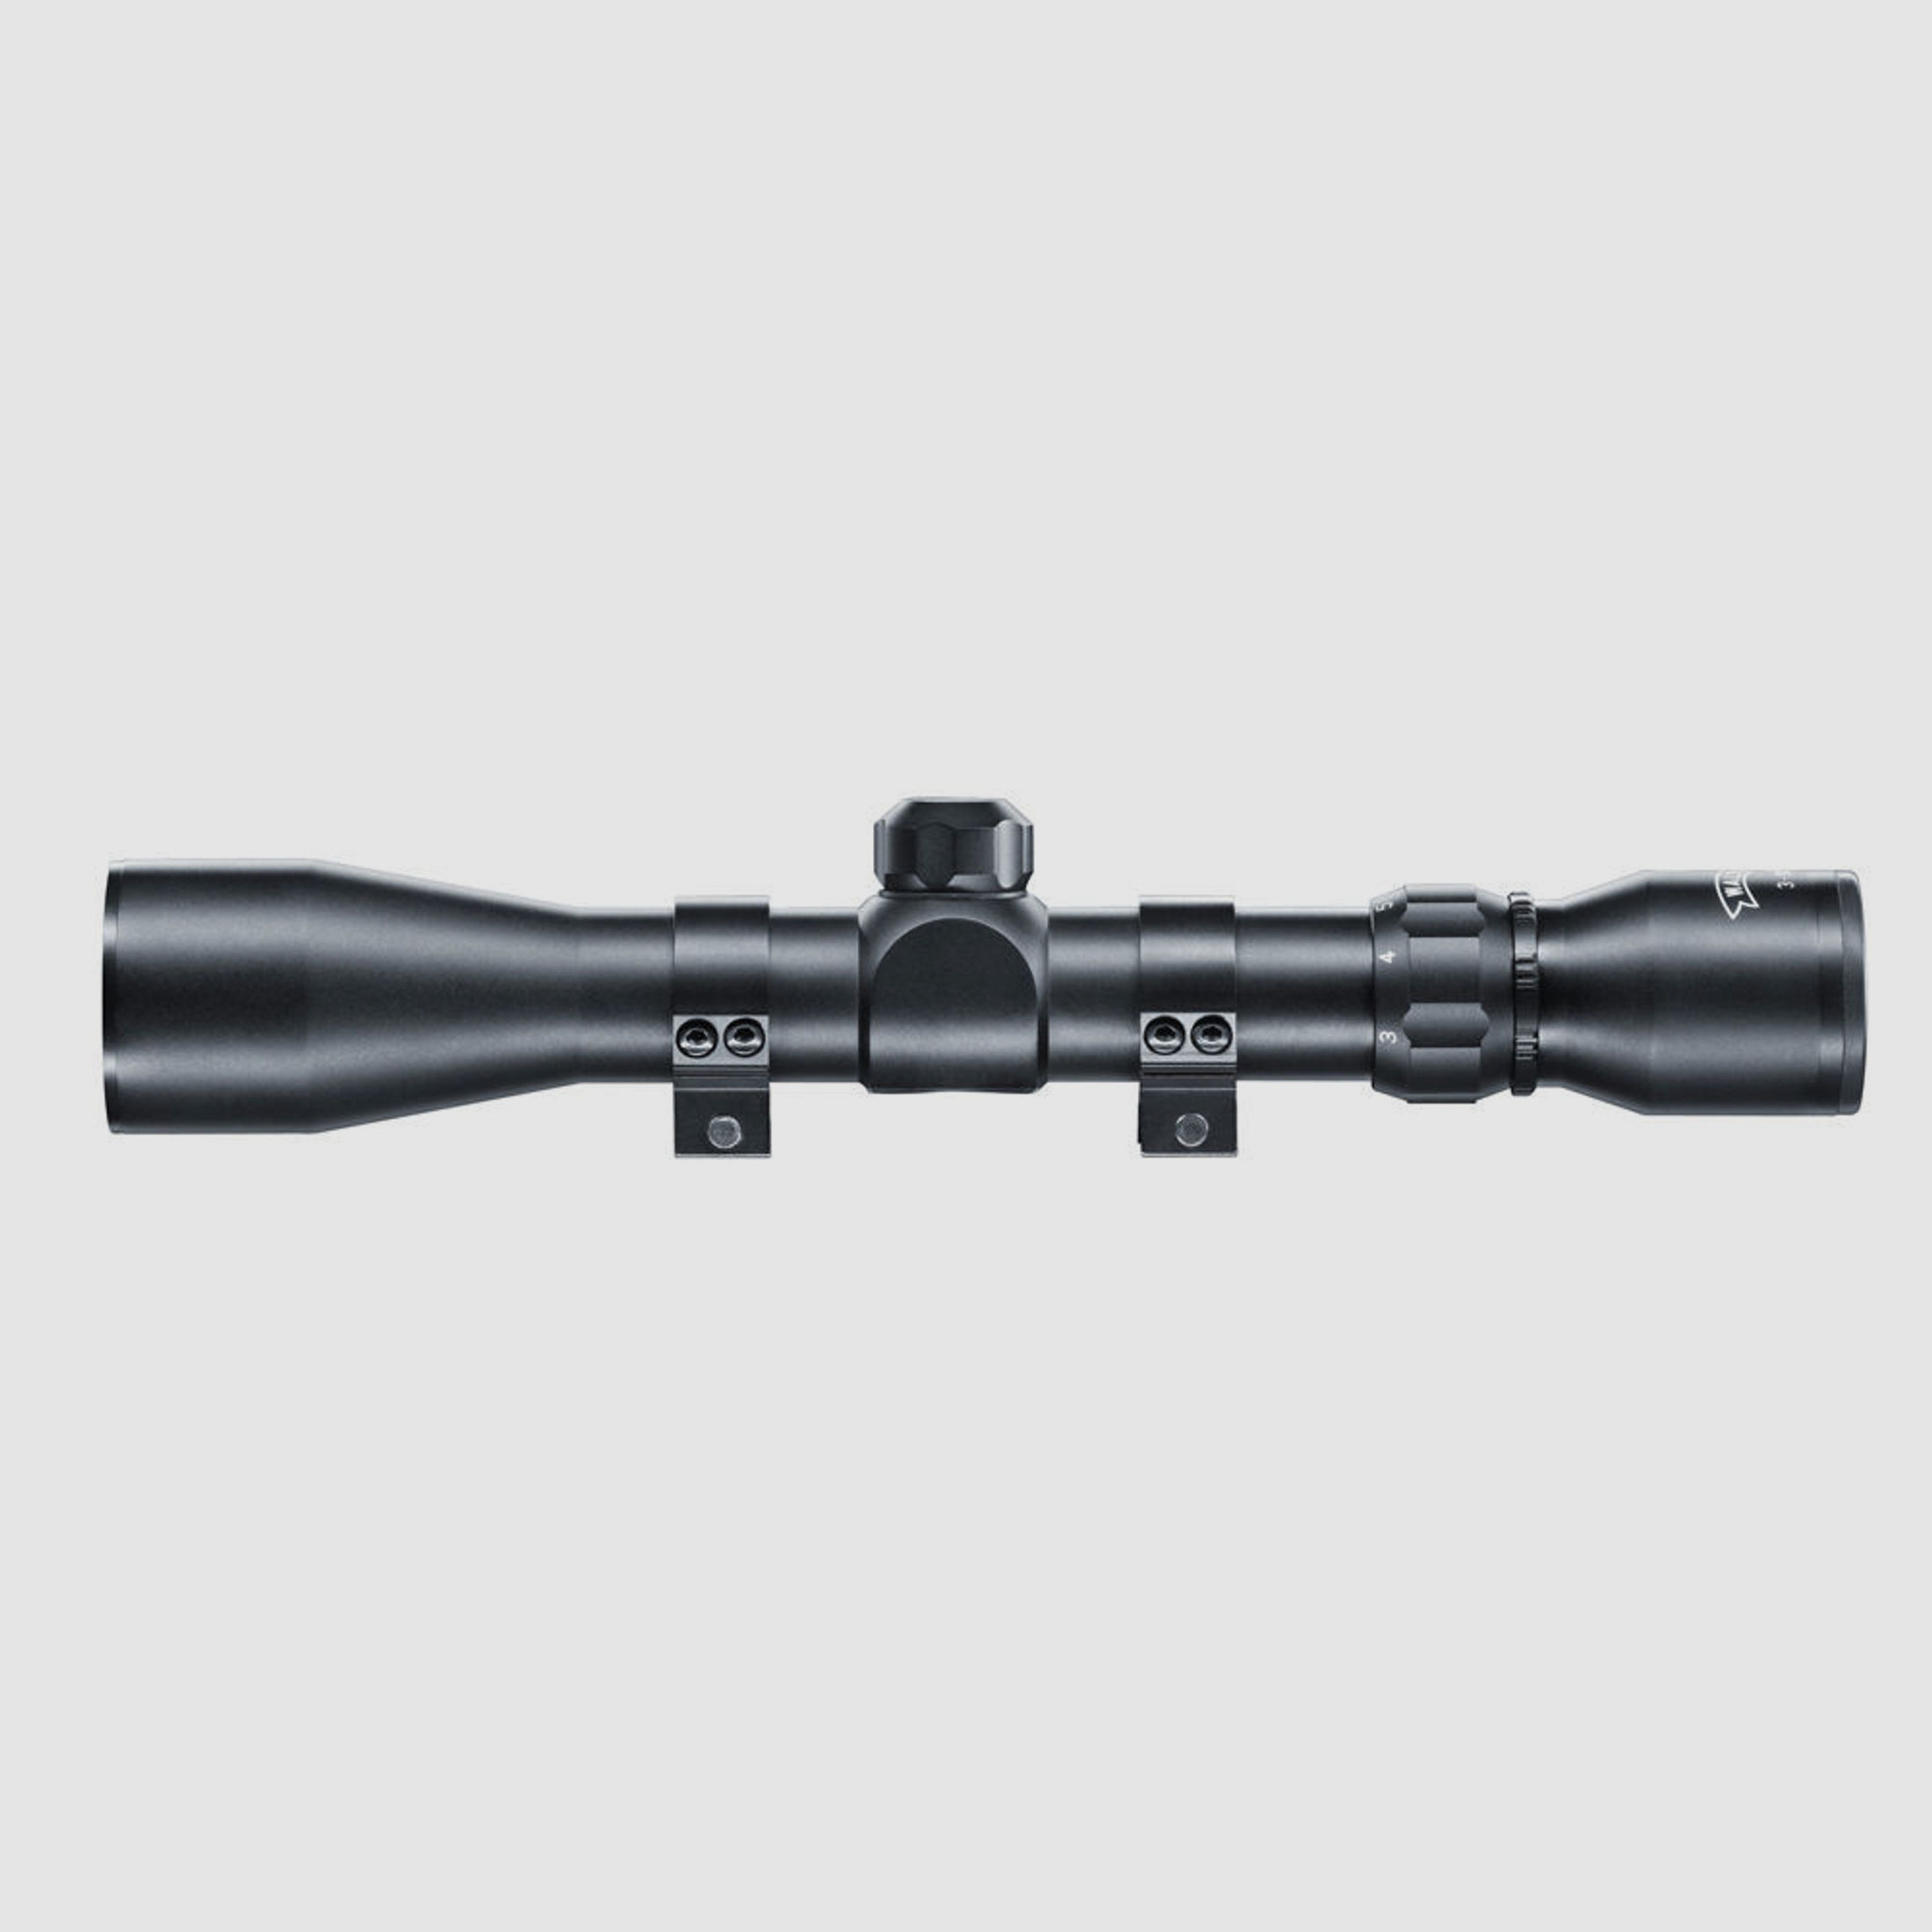 Umarex RS 3-9x40 Zielfernrohr inklusive Montage für 11 mm Schiene